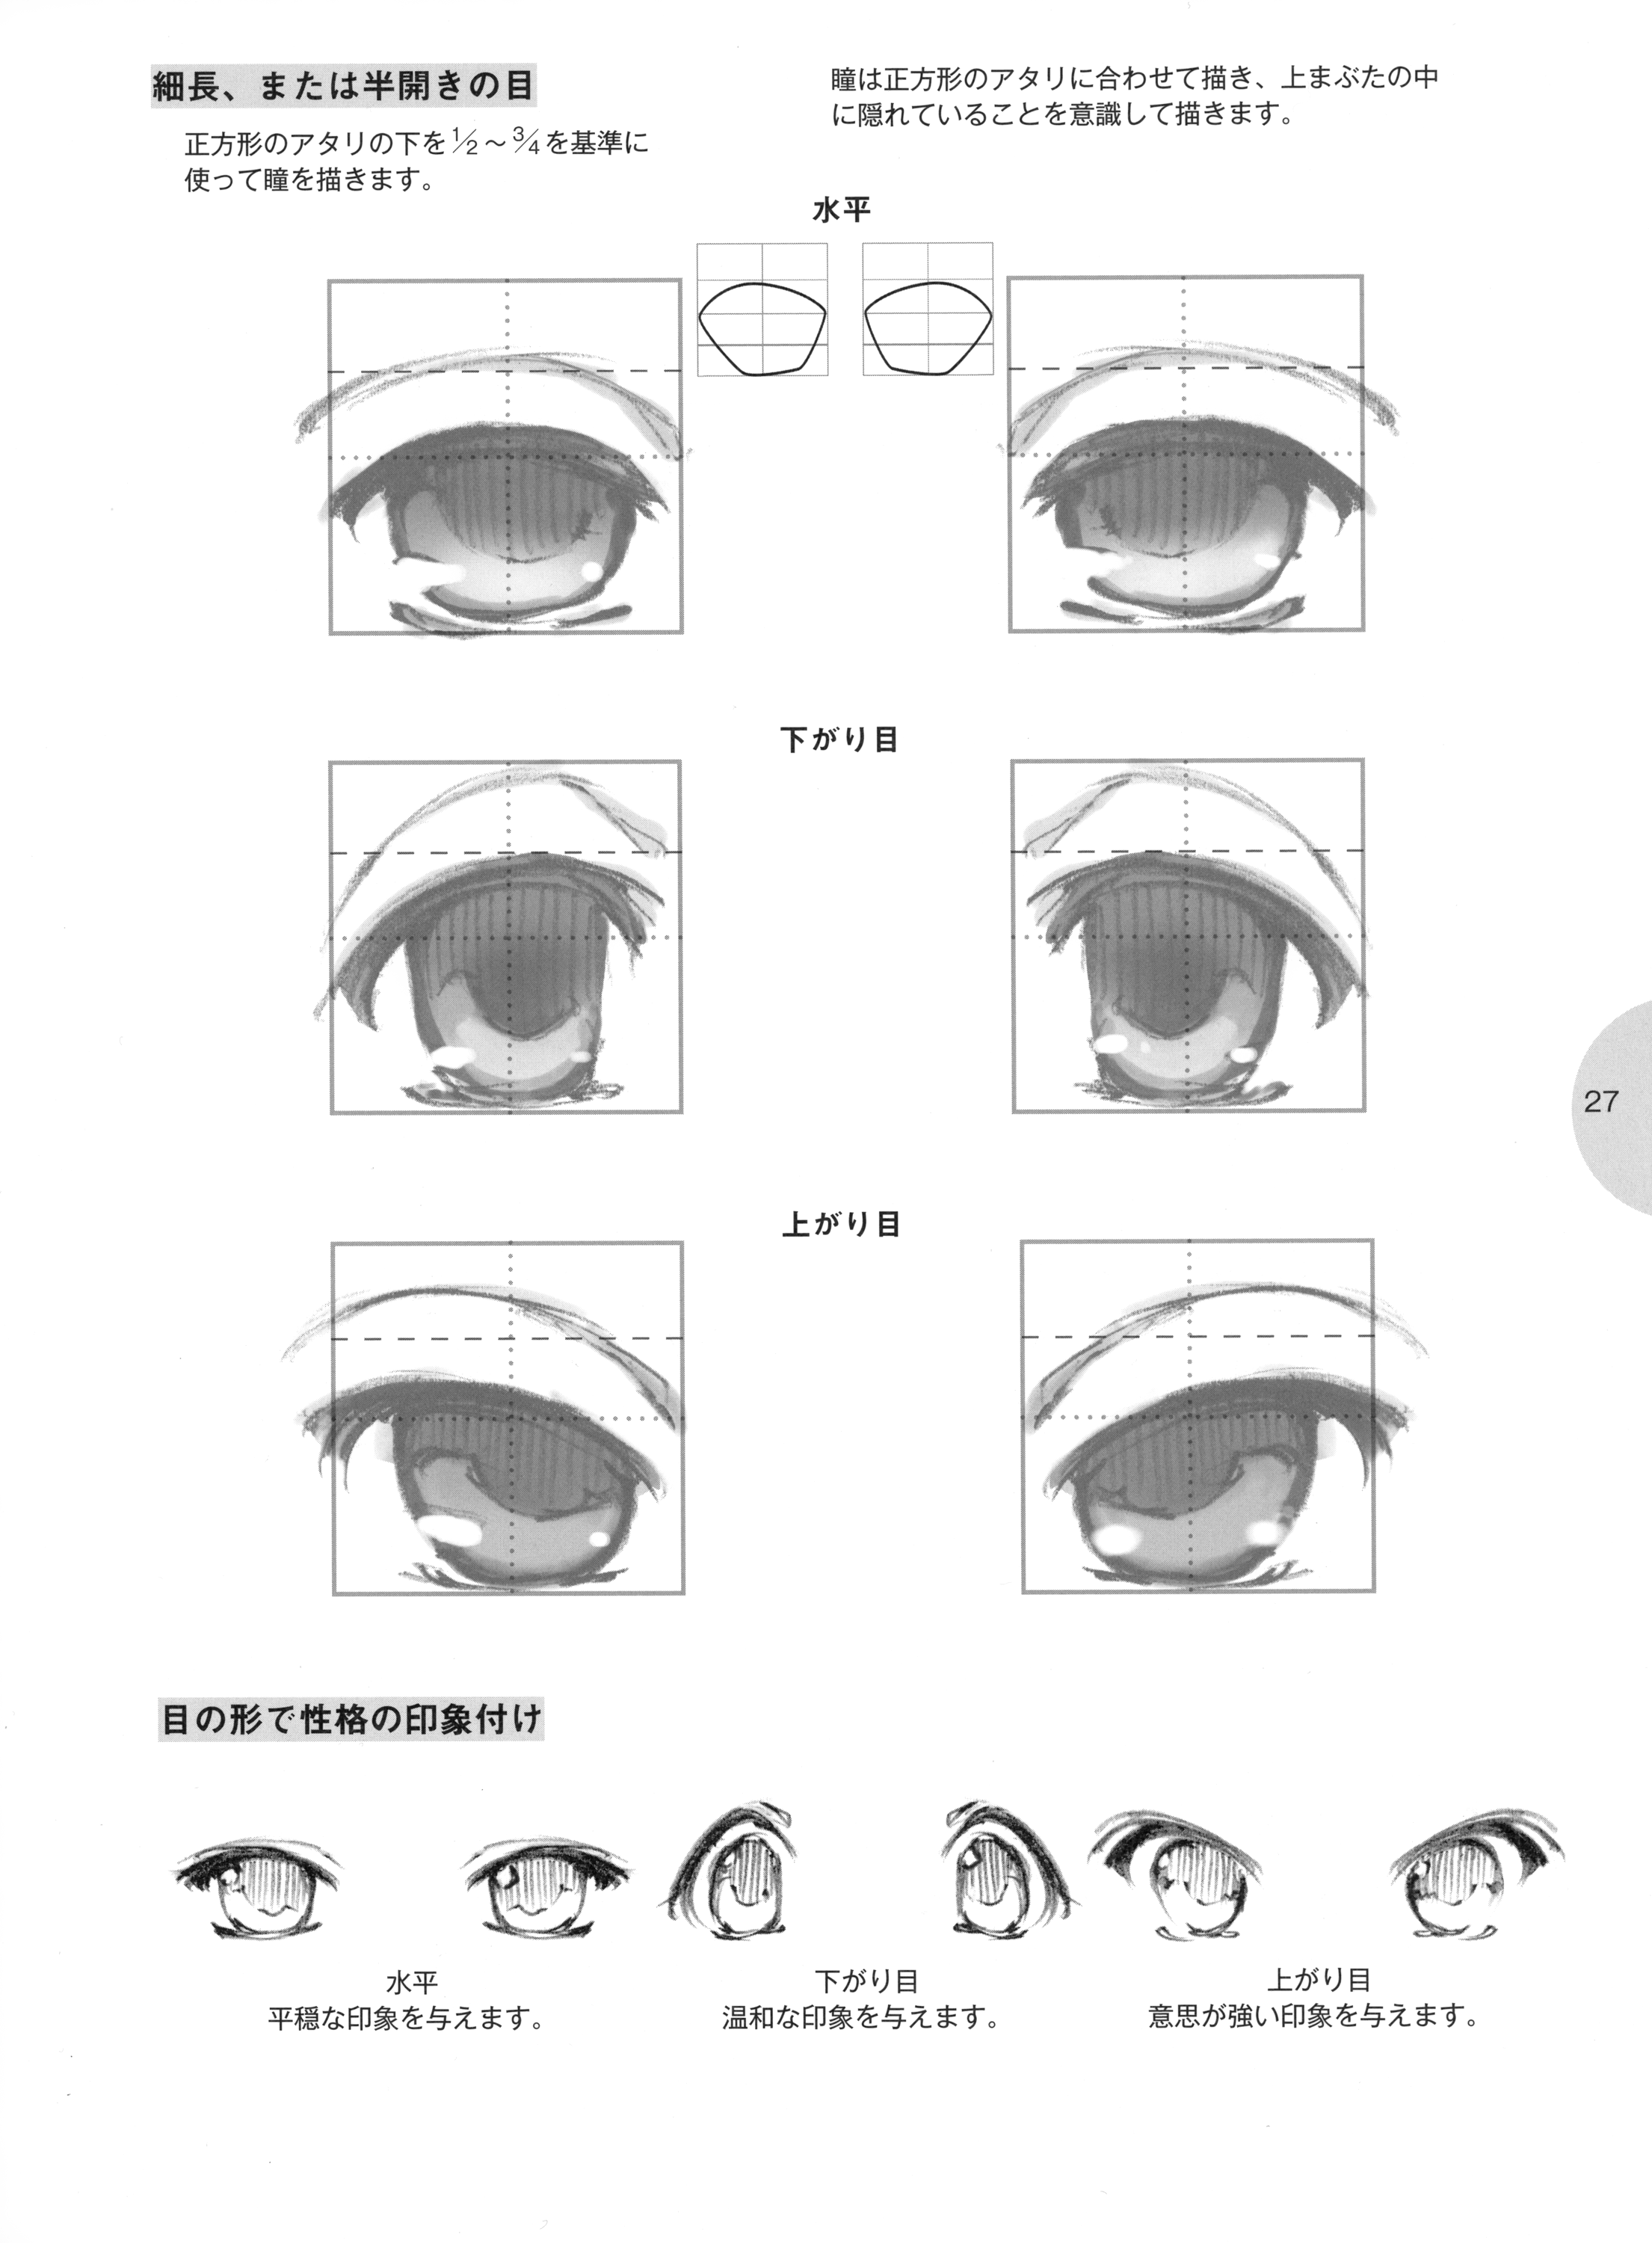 Схемы глаз из манги